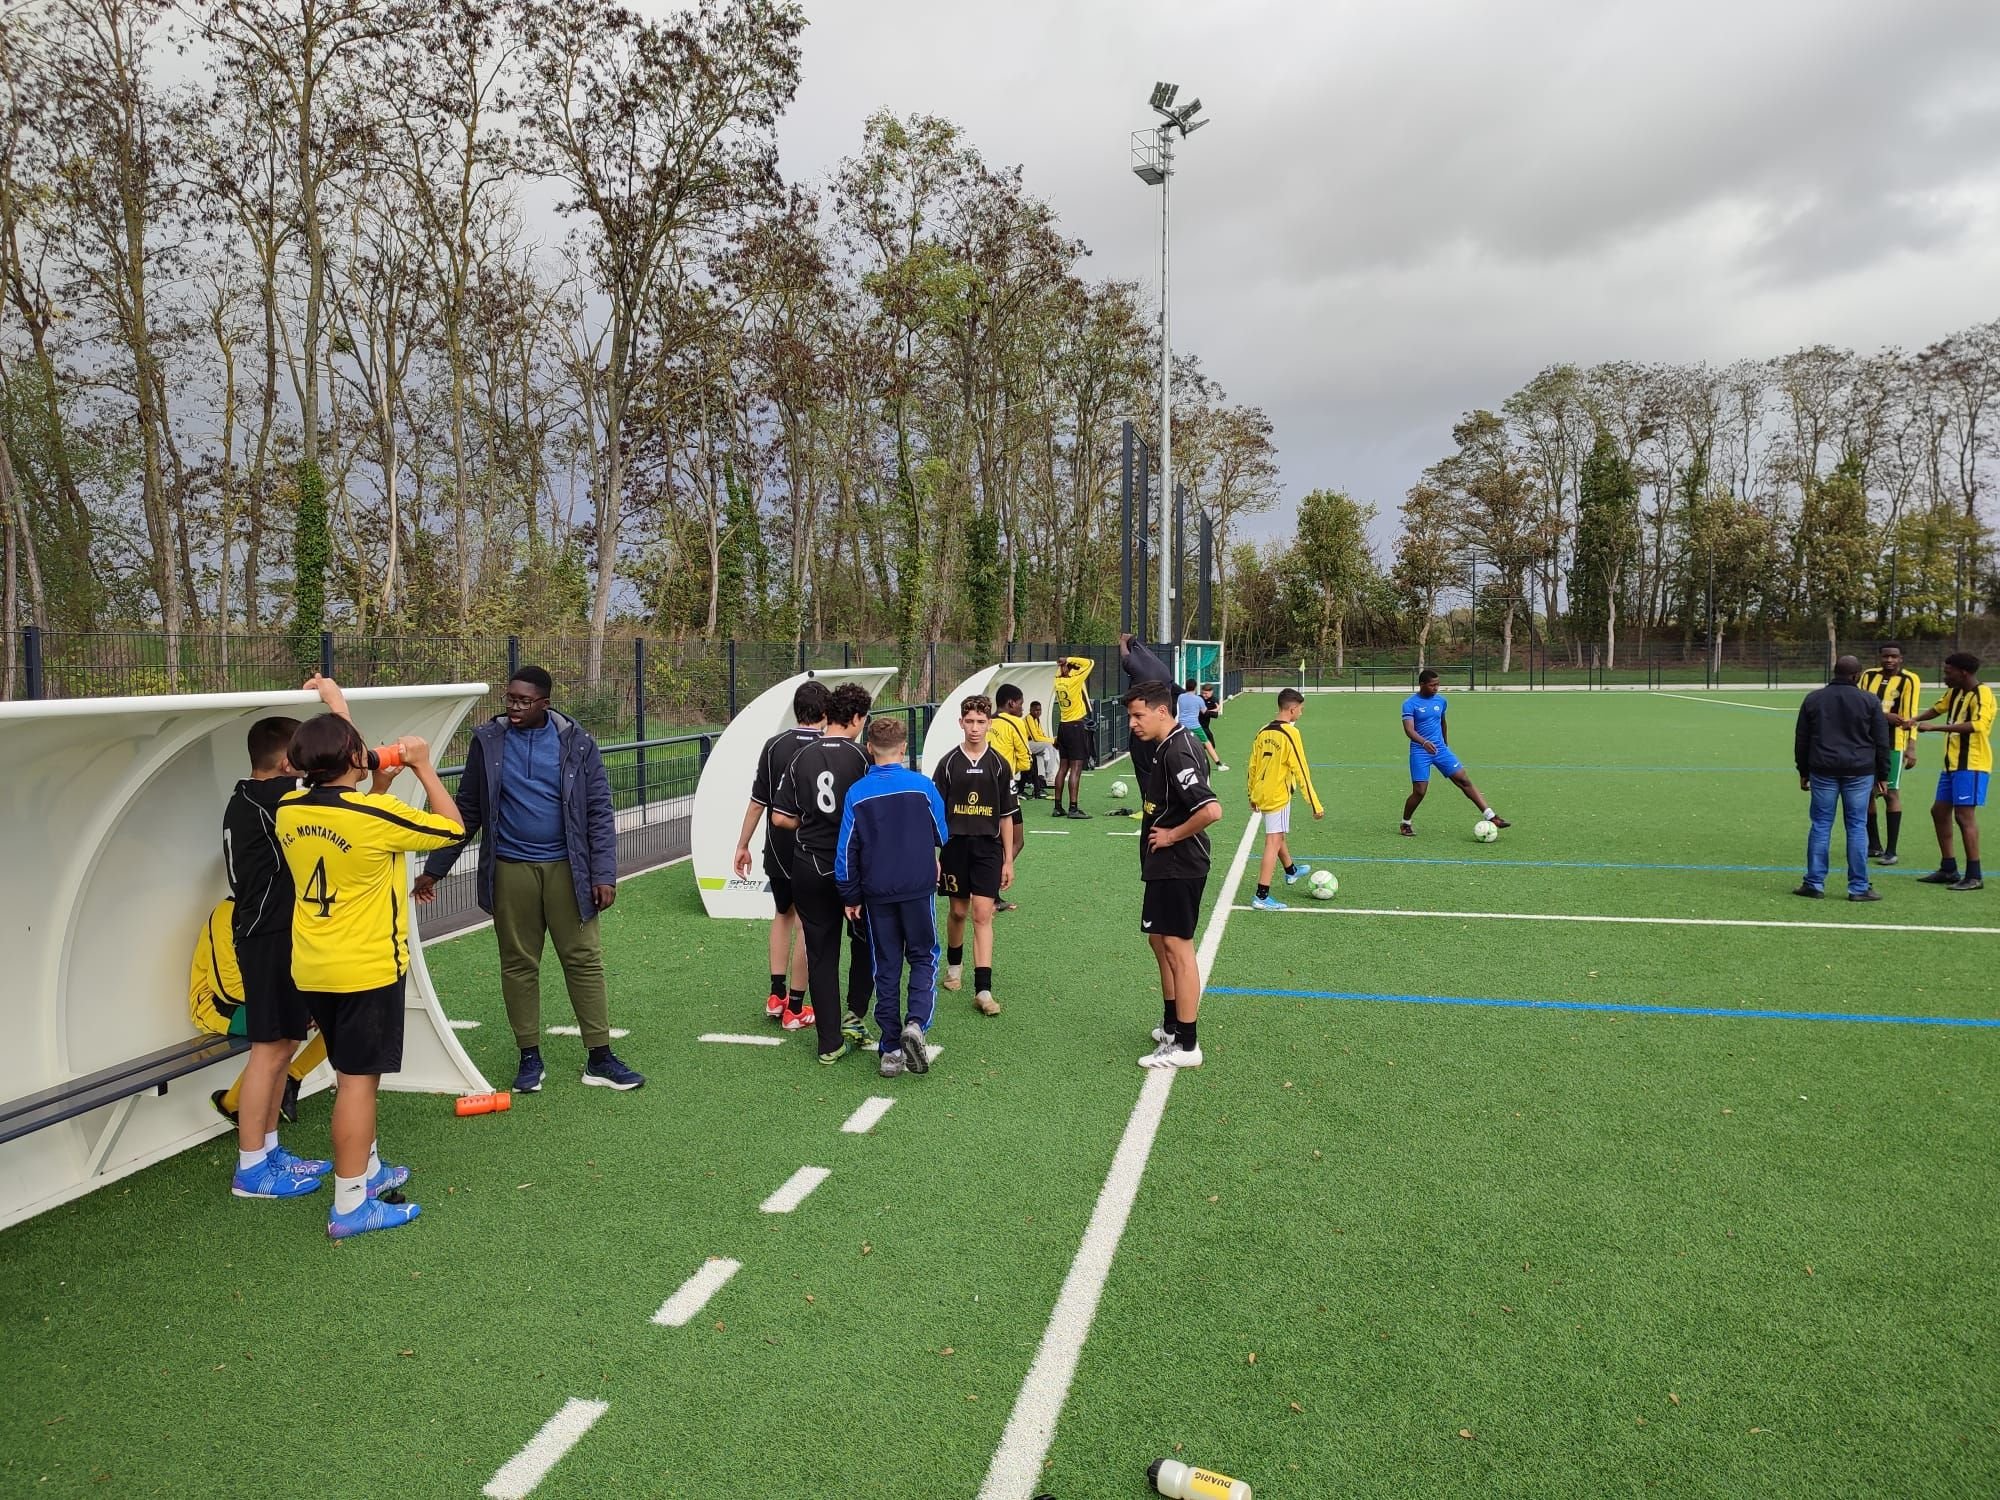 Le service de médiation de Montataire a organisé des matchs de foot avec des équipes composées d'habitants des différentes villes de l'agglomération. DR